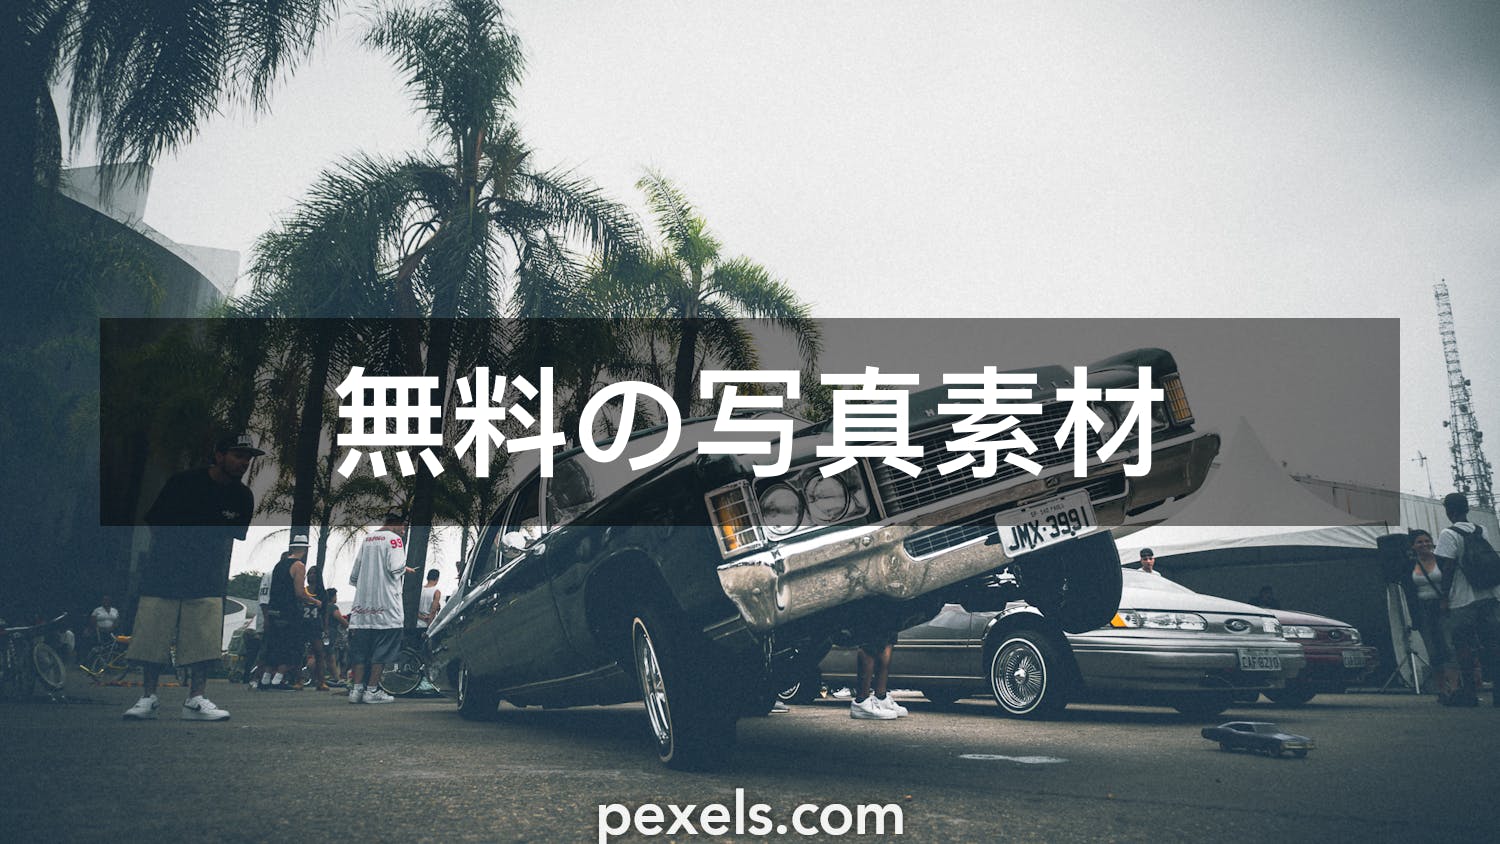 ローライダーと一致する写真 Pexels 無料の写真素材